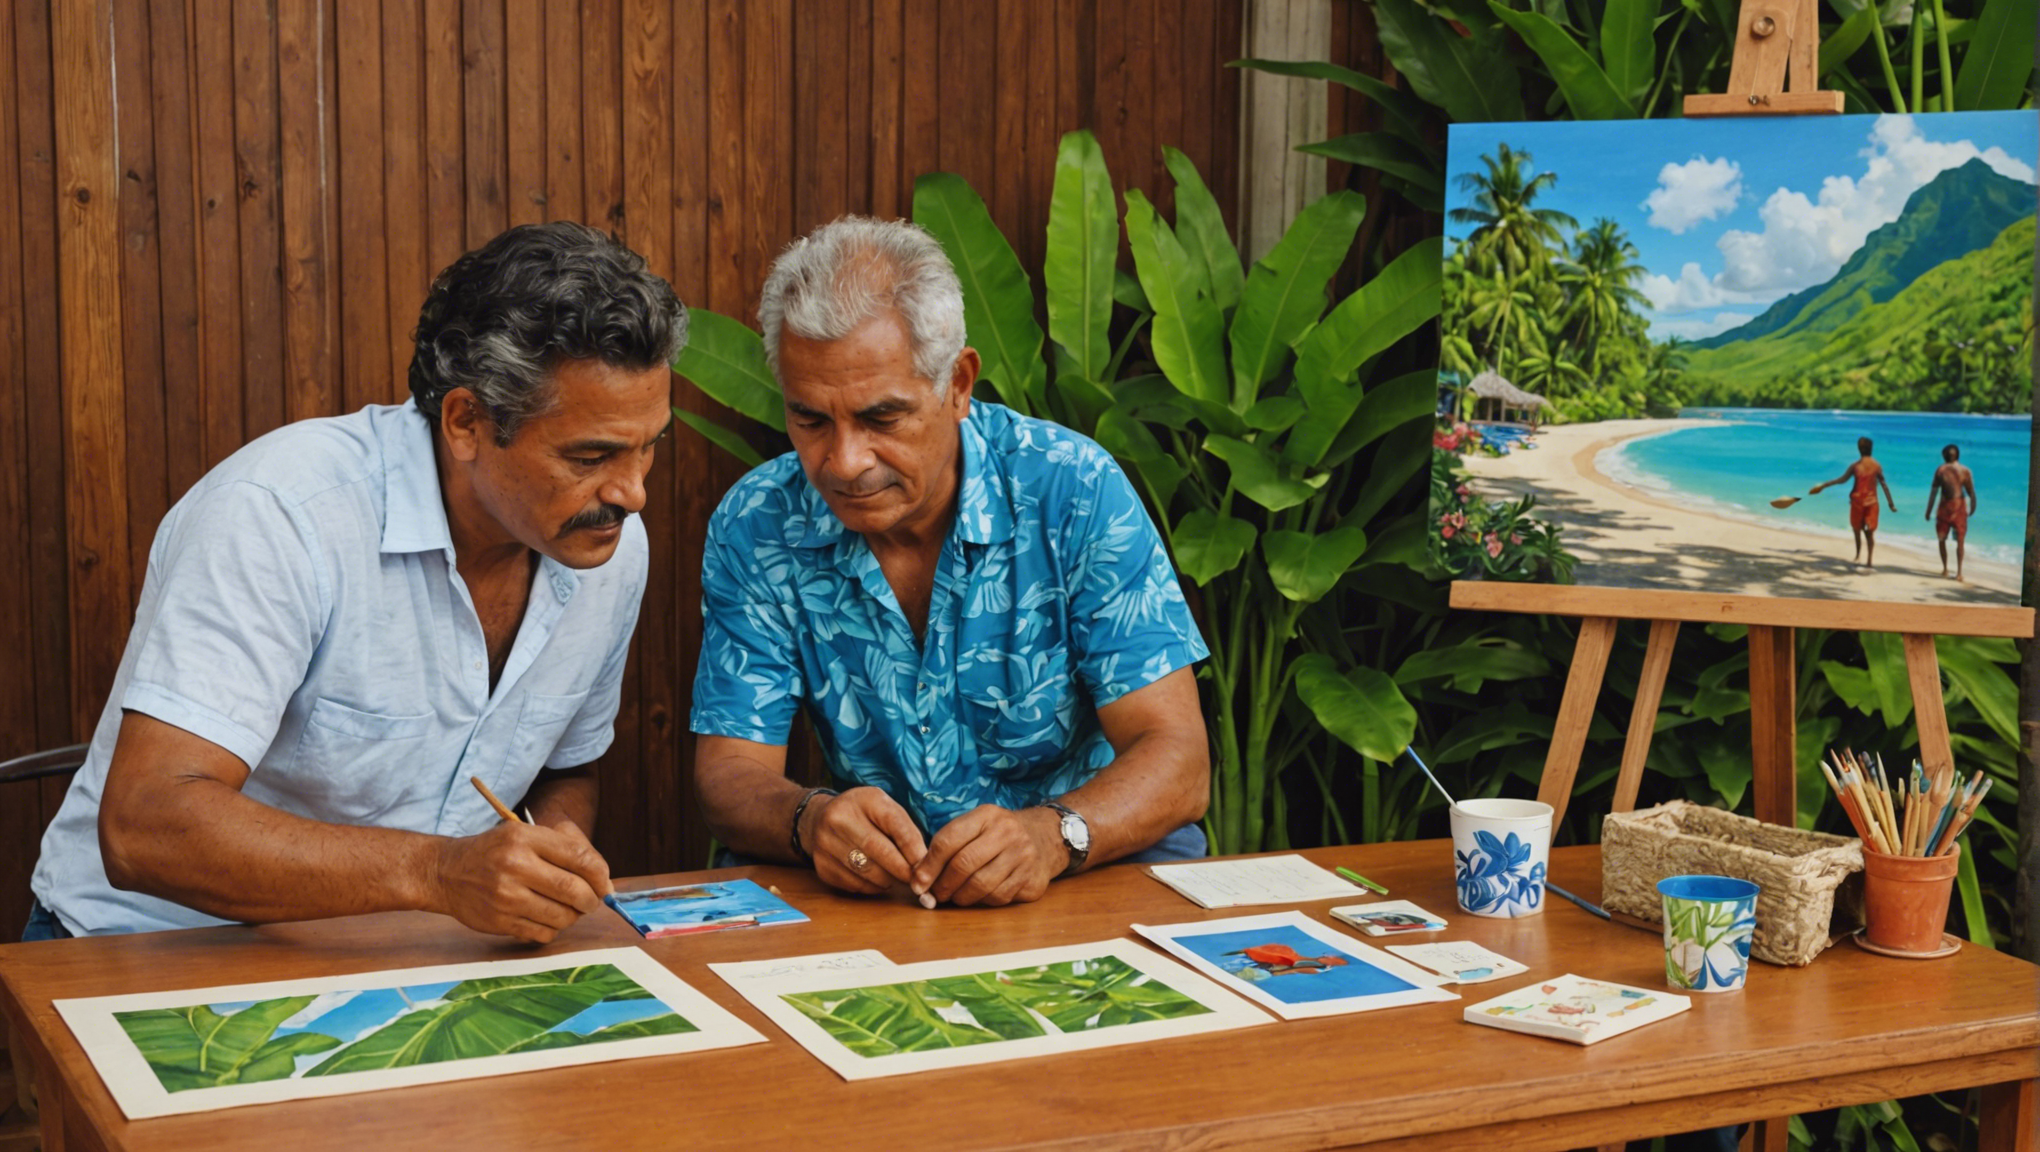 découvrez les trésors artistiques de l'artisanat polynésien de tahiti et plongez dans un univers d'authenticité et de créativité unique au monde.